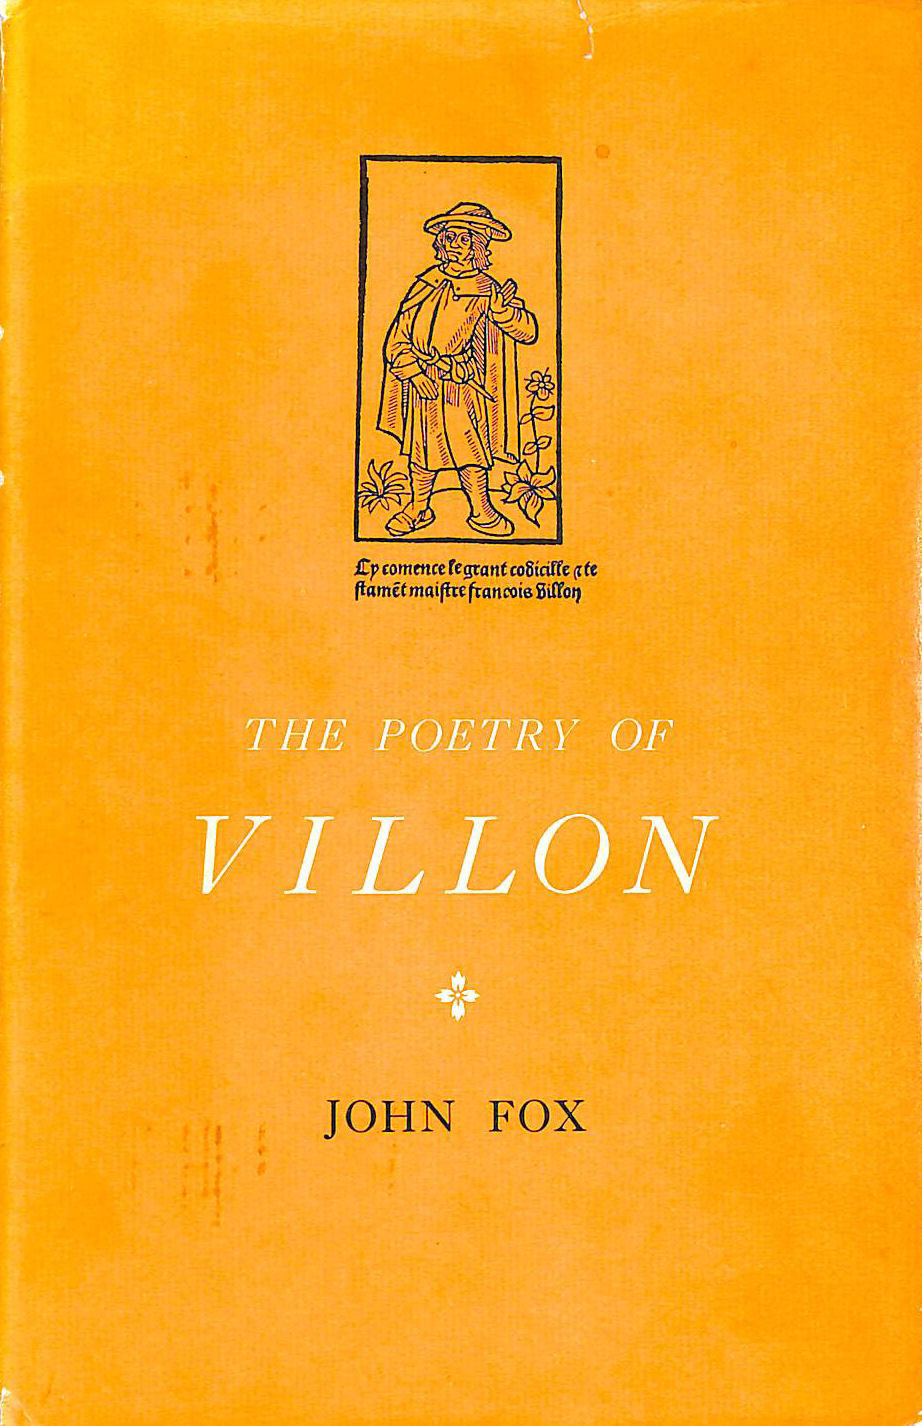 JOHN FOX - The poetry of Villon